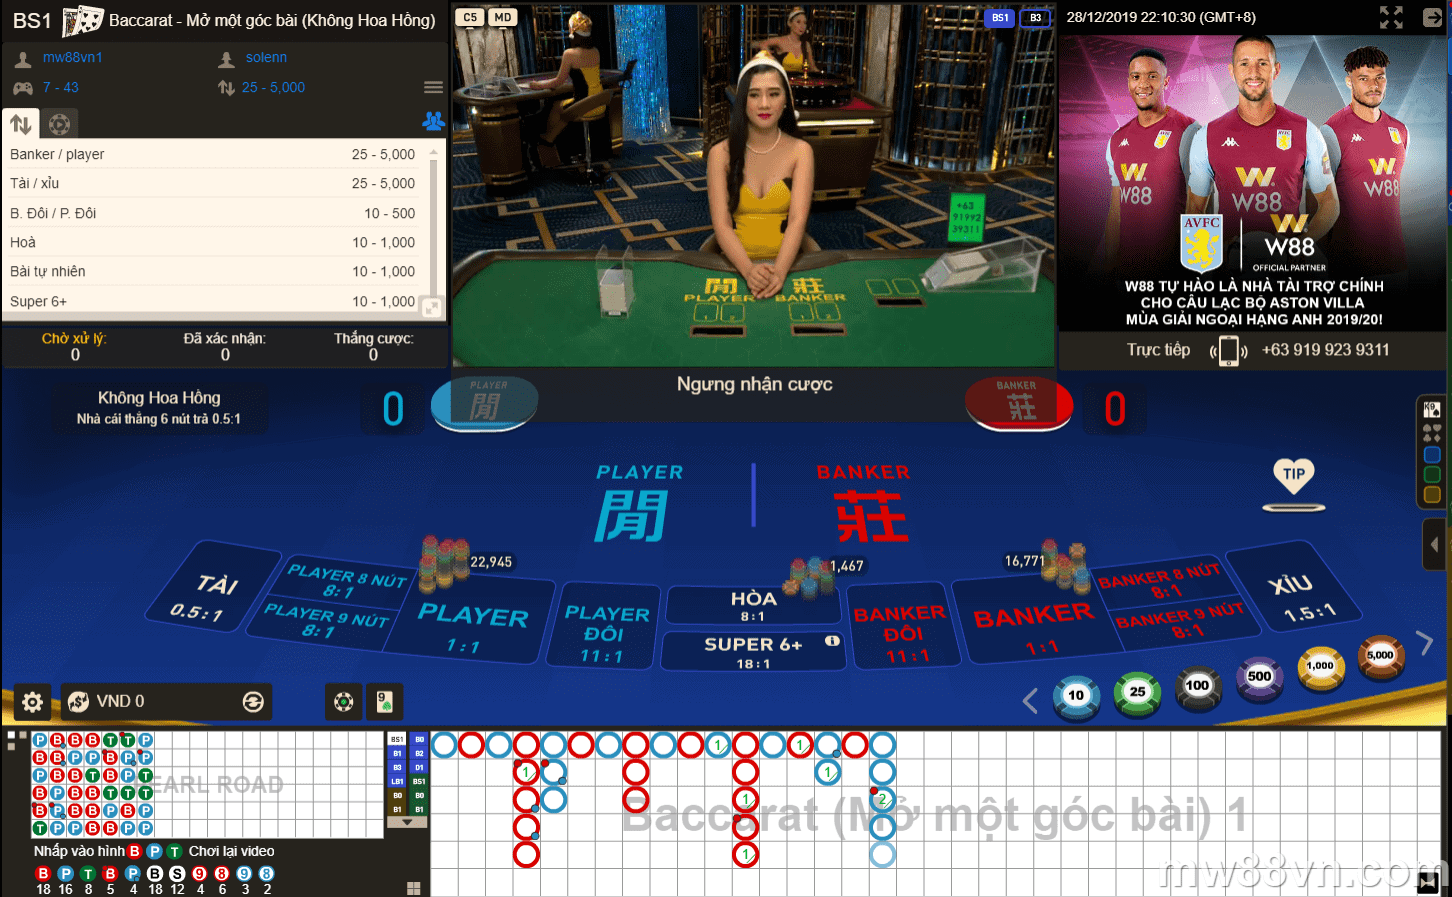 Chiến thuật chơi Bacarat casino bất bại - Thắng nhà cái dễ dàng